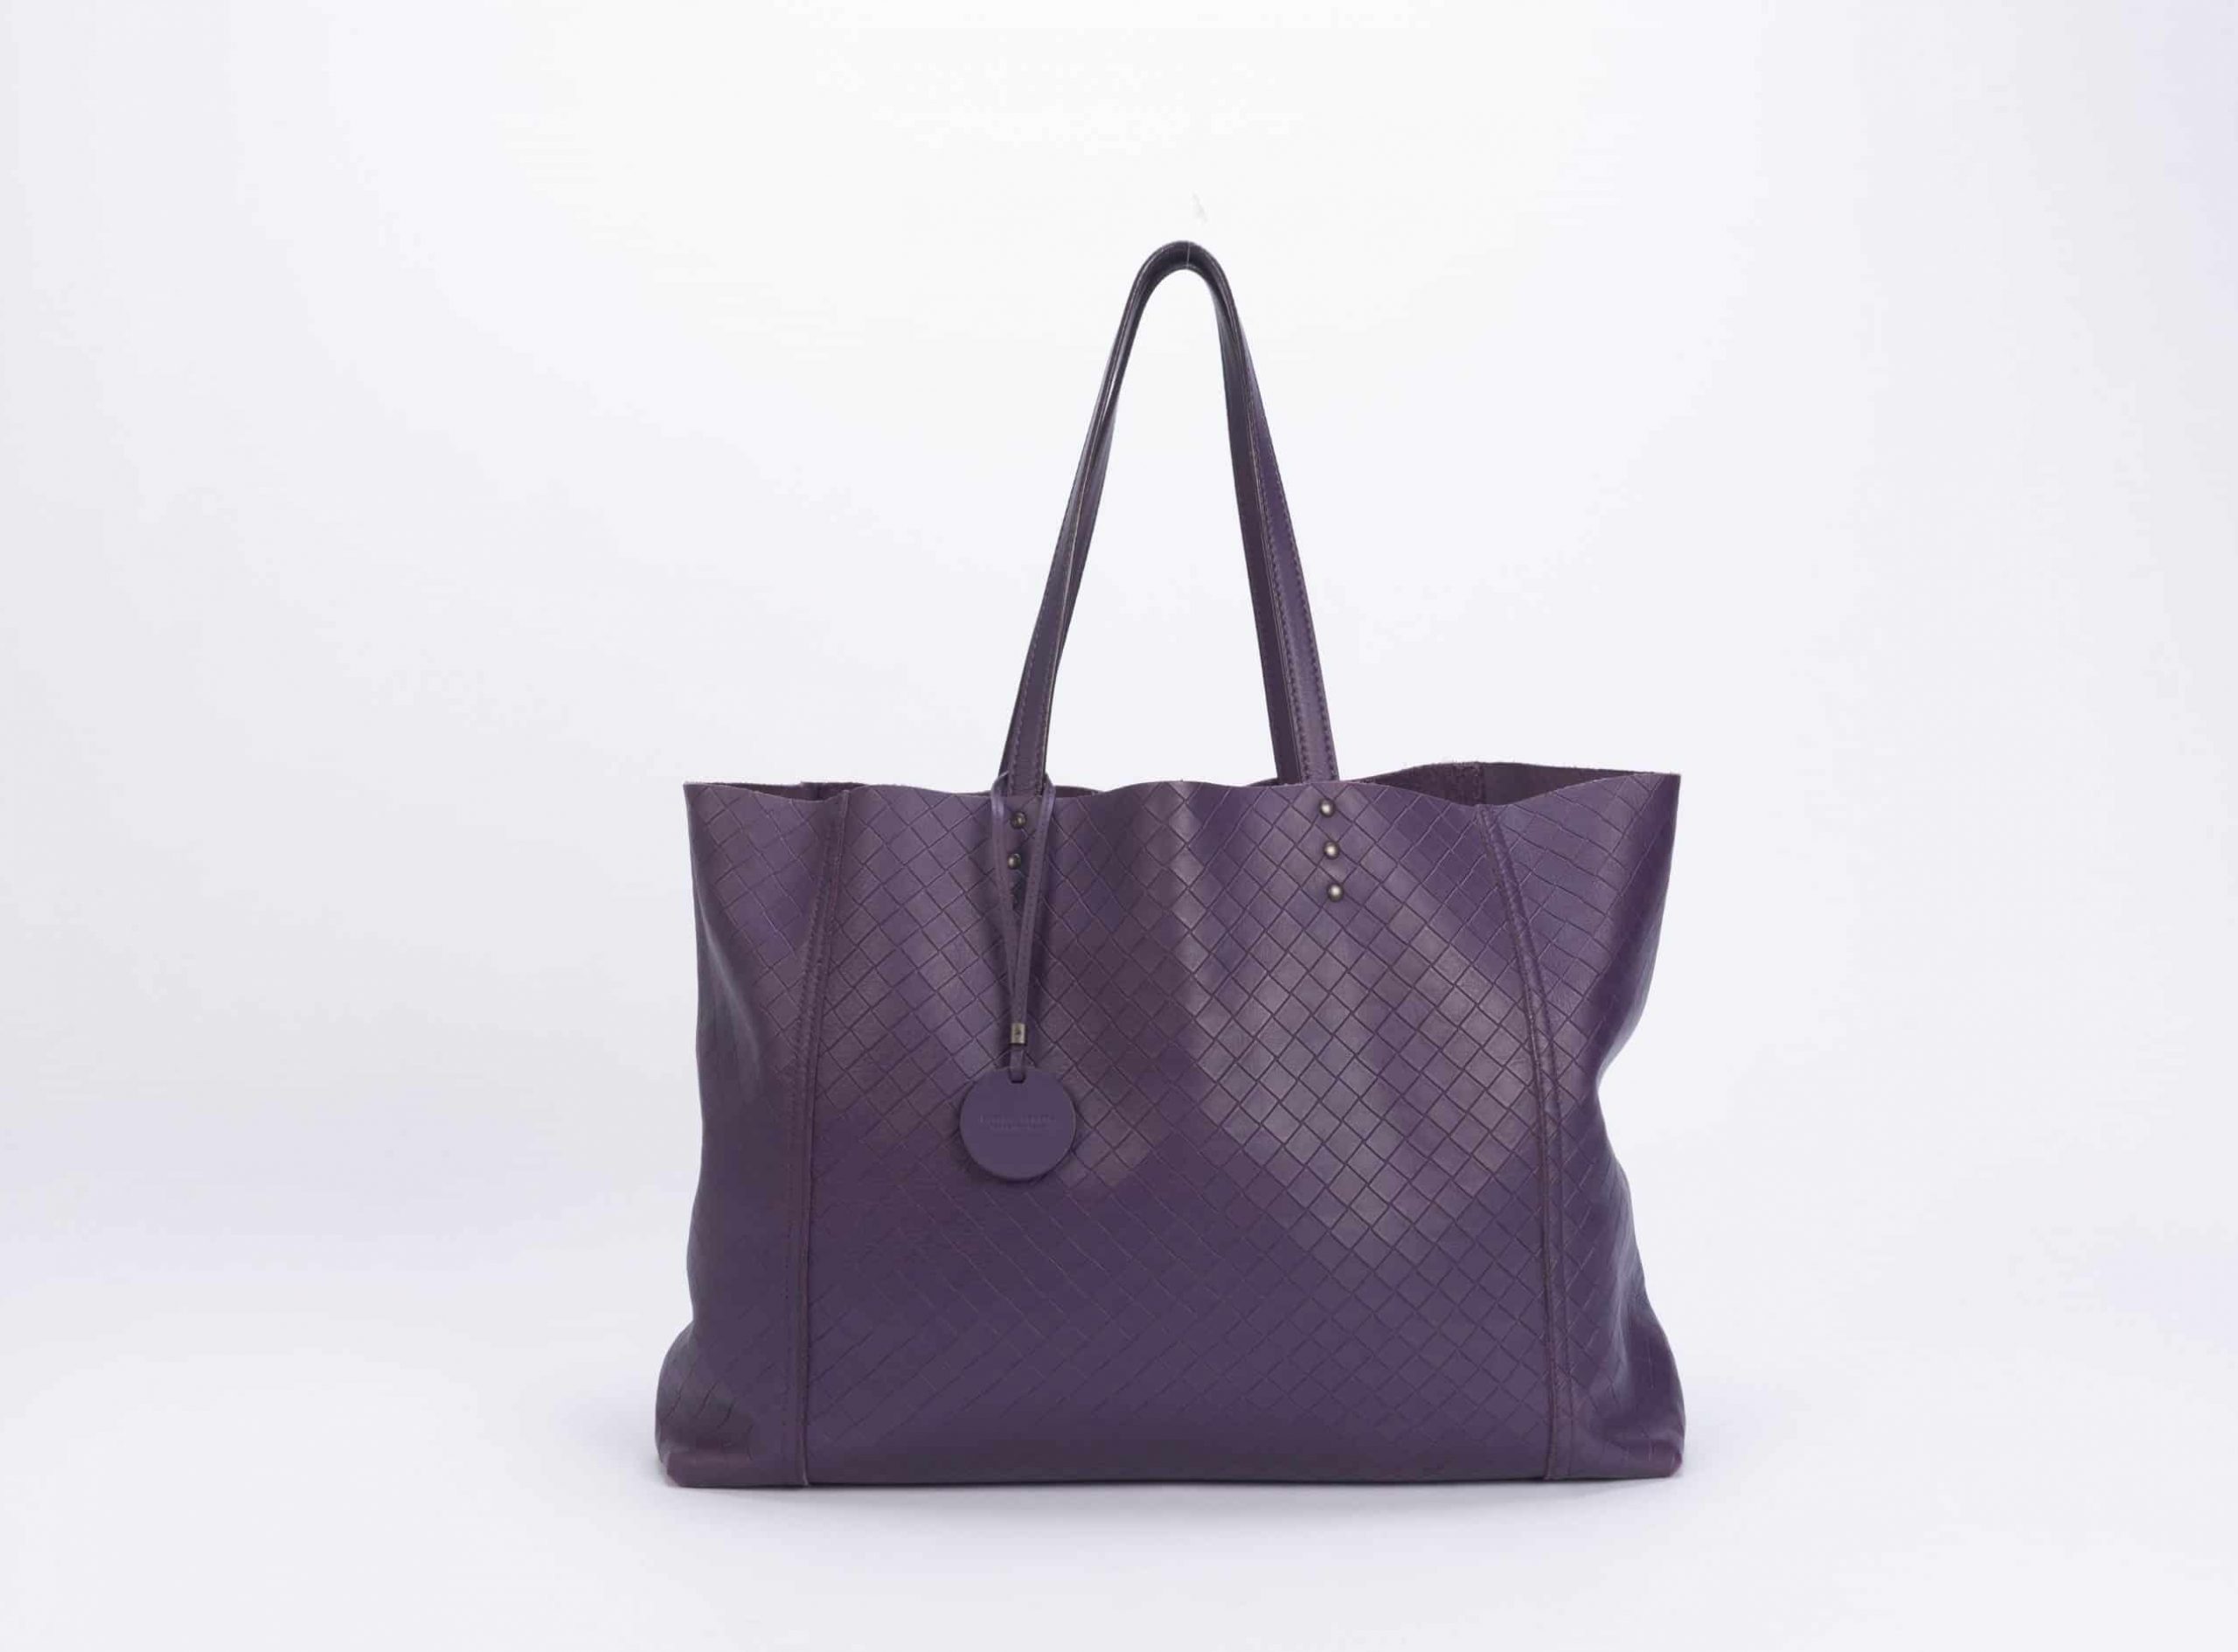 Bottega Veneta Weave in Purple Leather Hobo Bag - 1